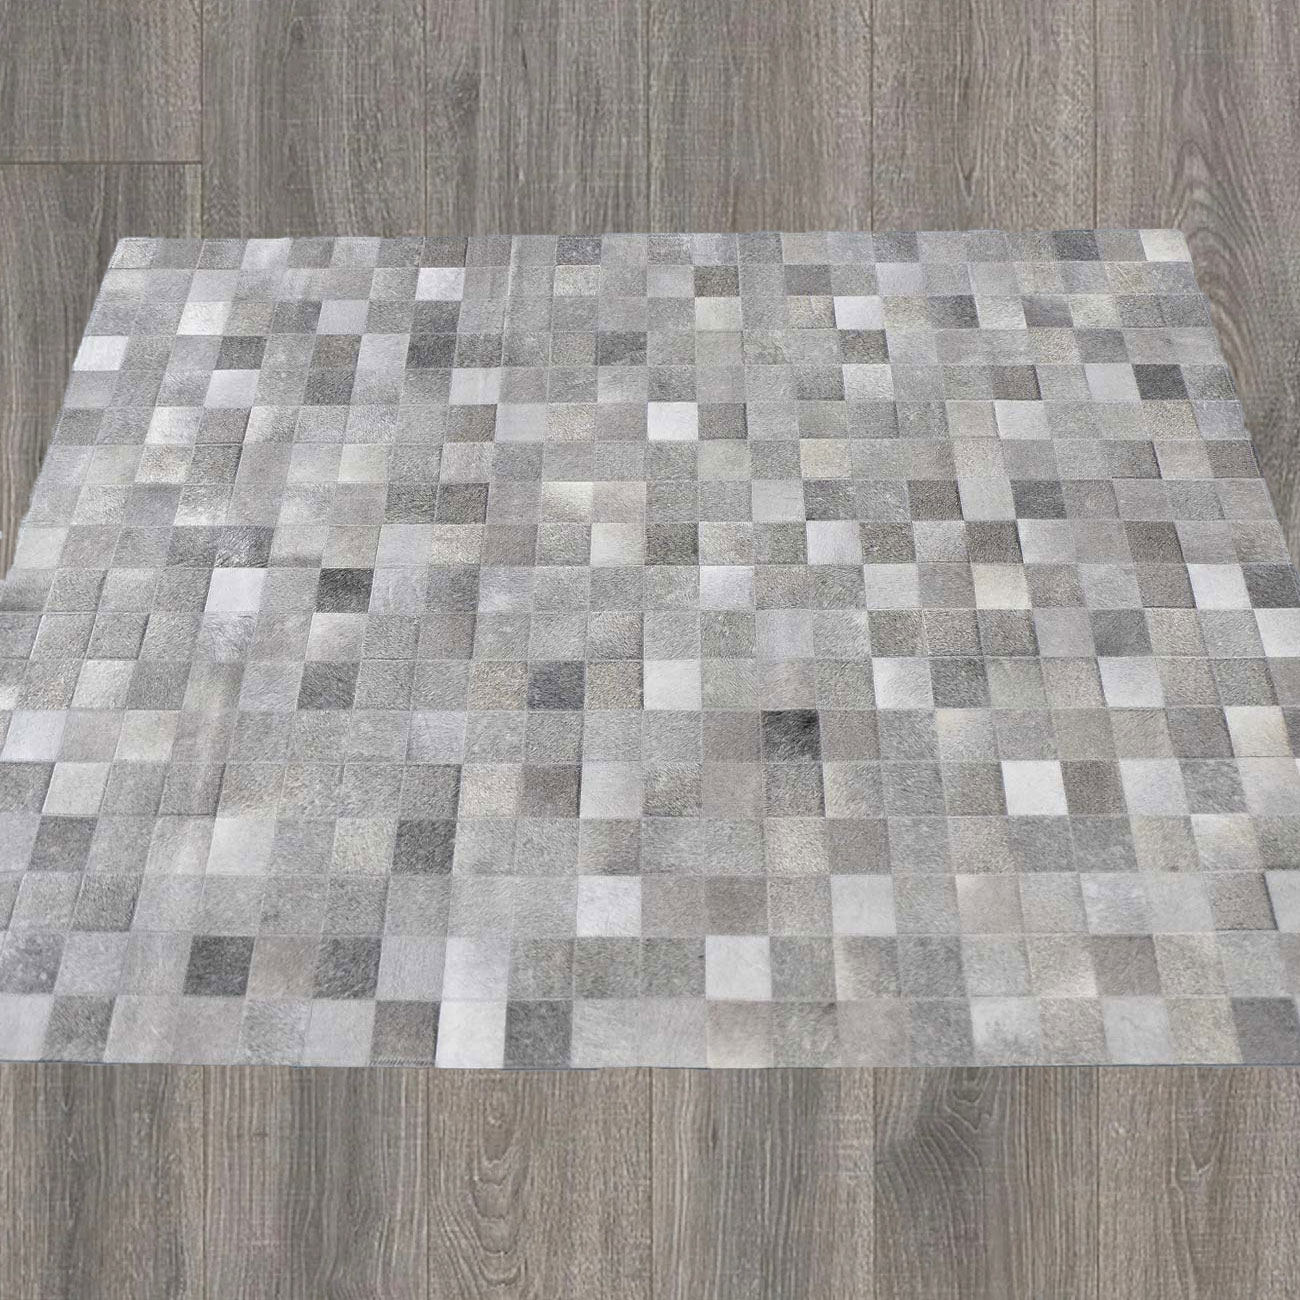 cowhide patchwork designer rug